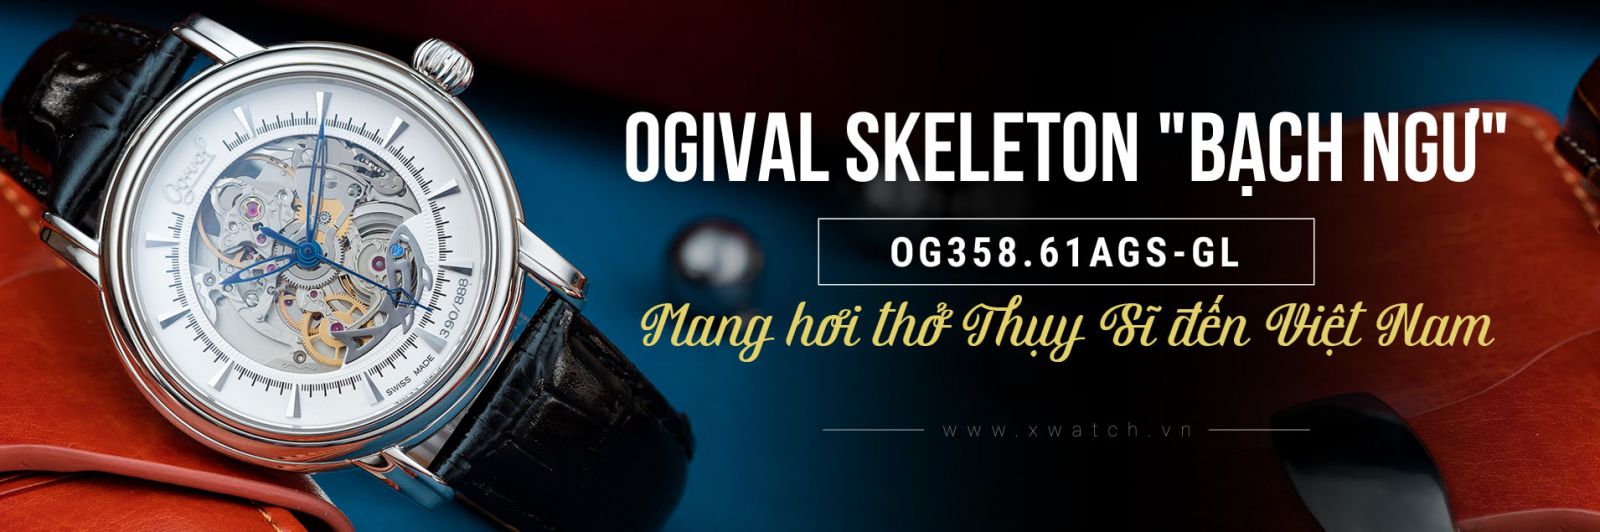 Đồng hồ Ogival OG358.61AGS-GL